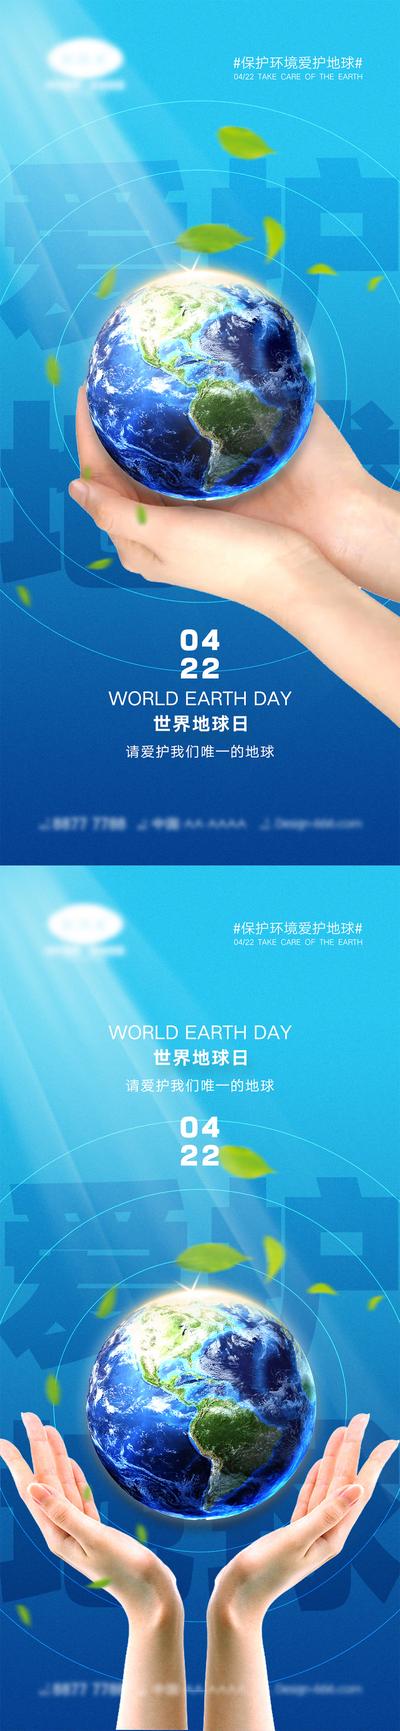 【南门网】海报 系列 公历节日 房地产 地球一小时 世界地球日 地球 双手 呵护 时间 沙漏 环保